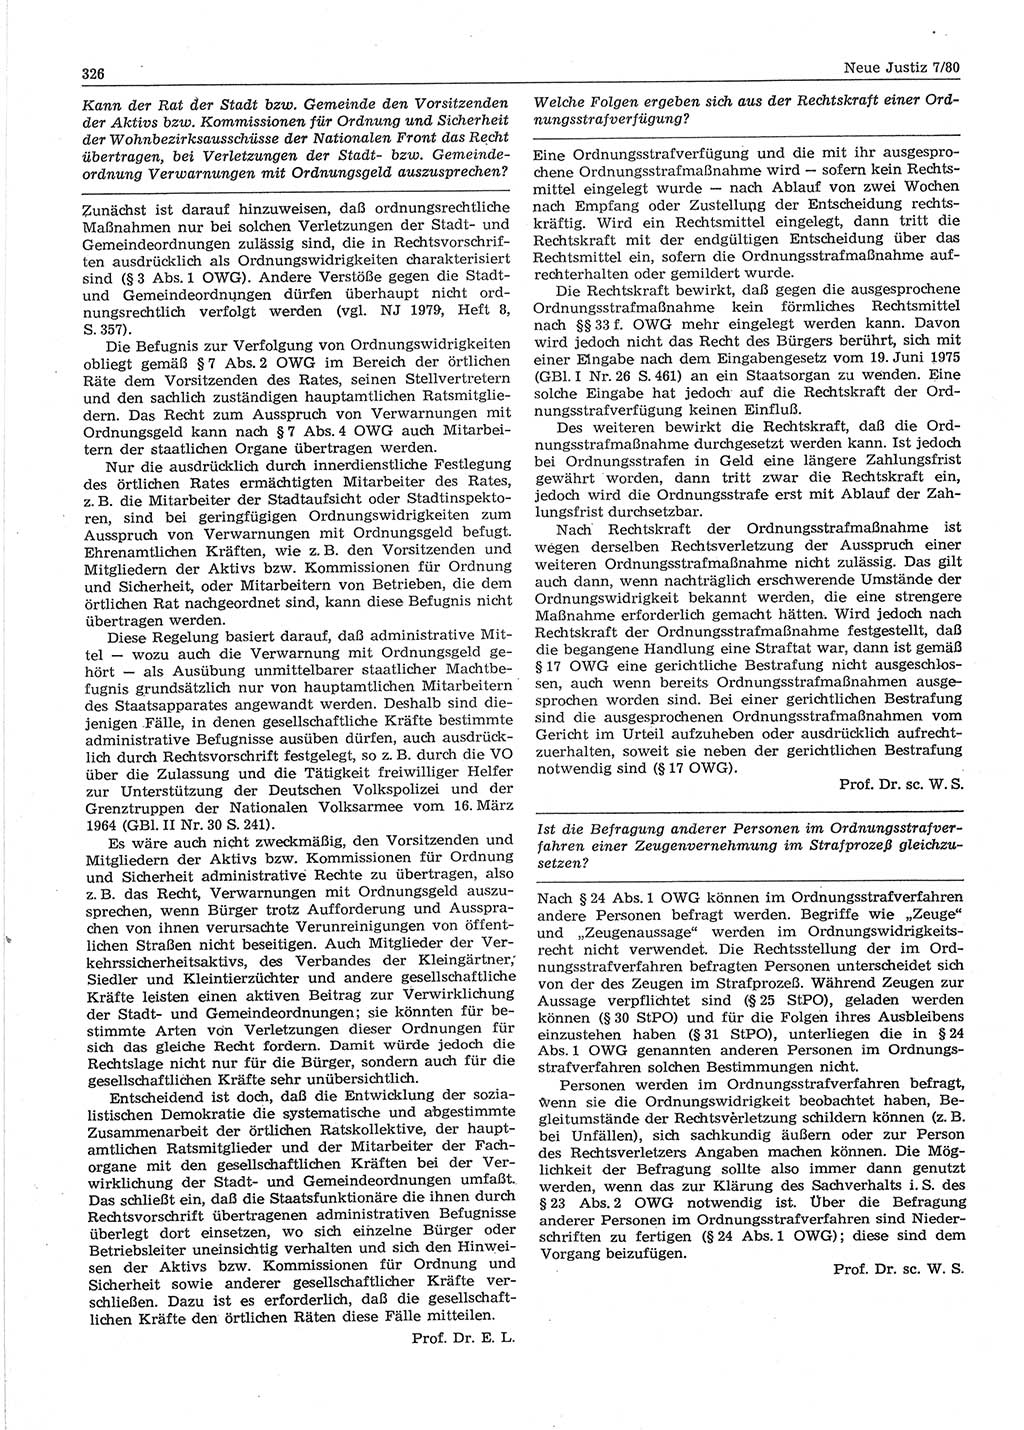 Neue Justiz (NJ), Zeitschrift für sozialistisches Recht und Gesetzlichkeit [Deutsche Demokratische Republik (DDR)], 34. Jahrgang 1980, Seite 326 (NJ DDR 1980, S. 326)